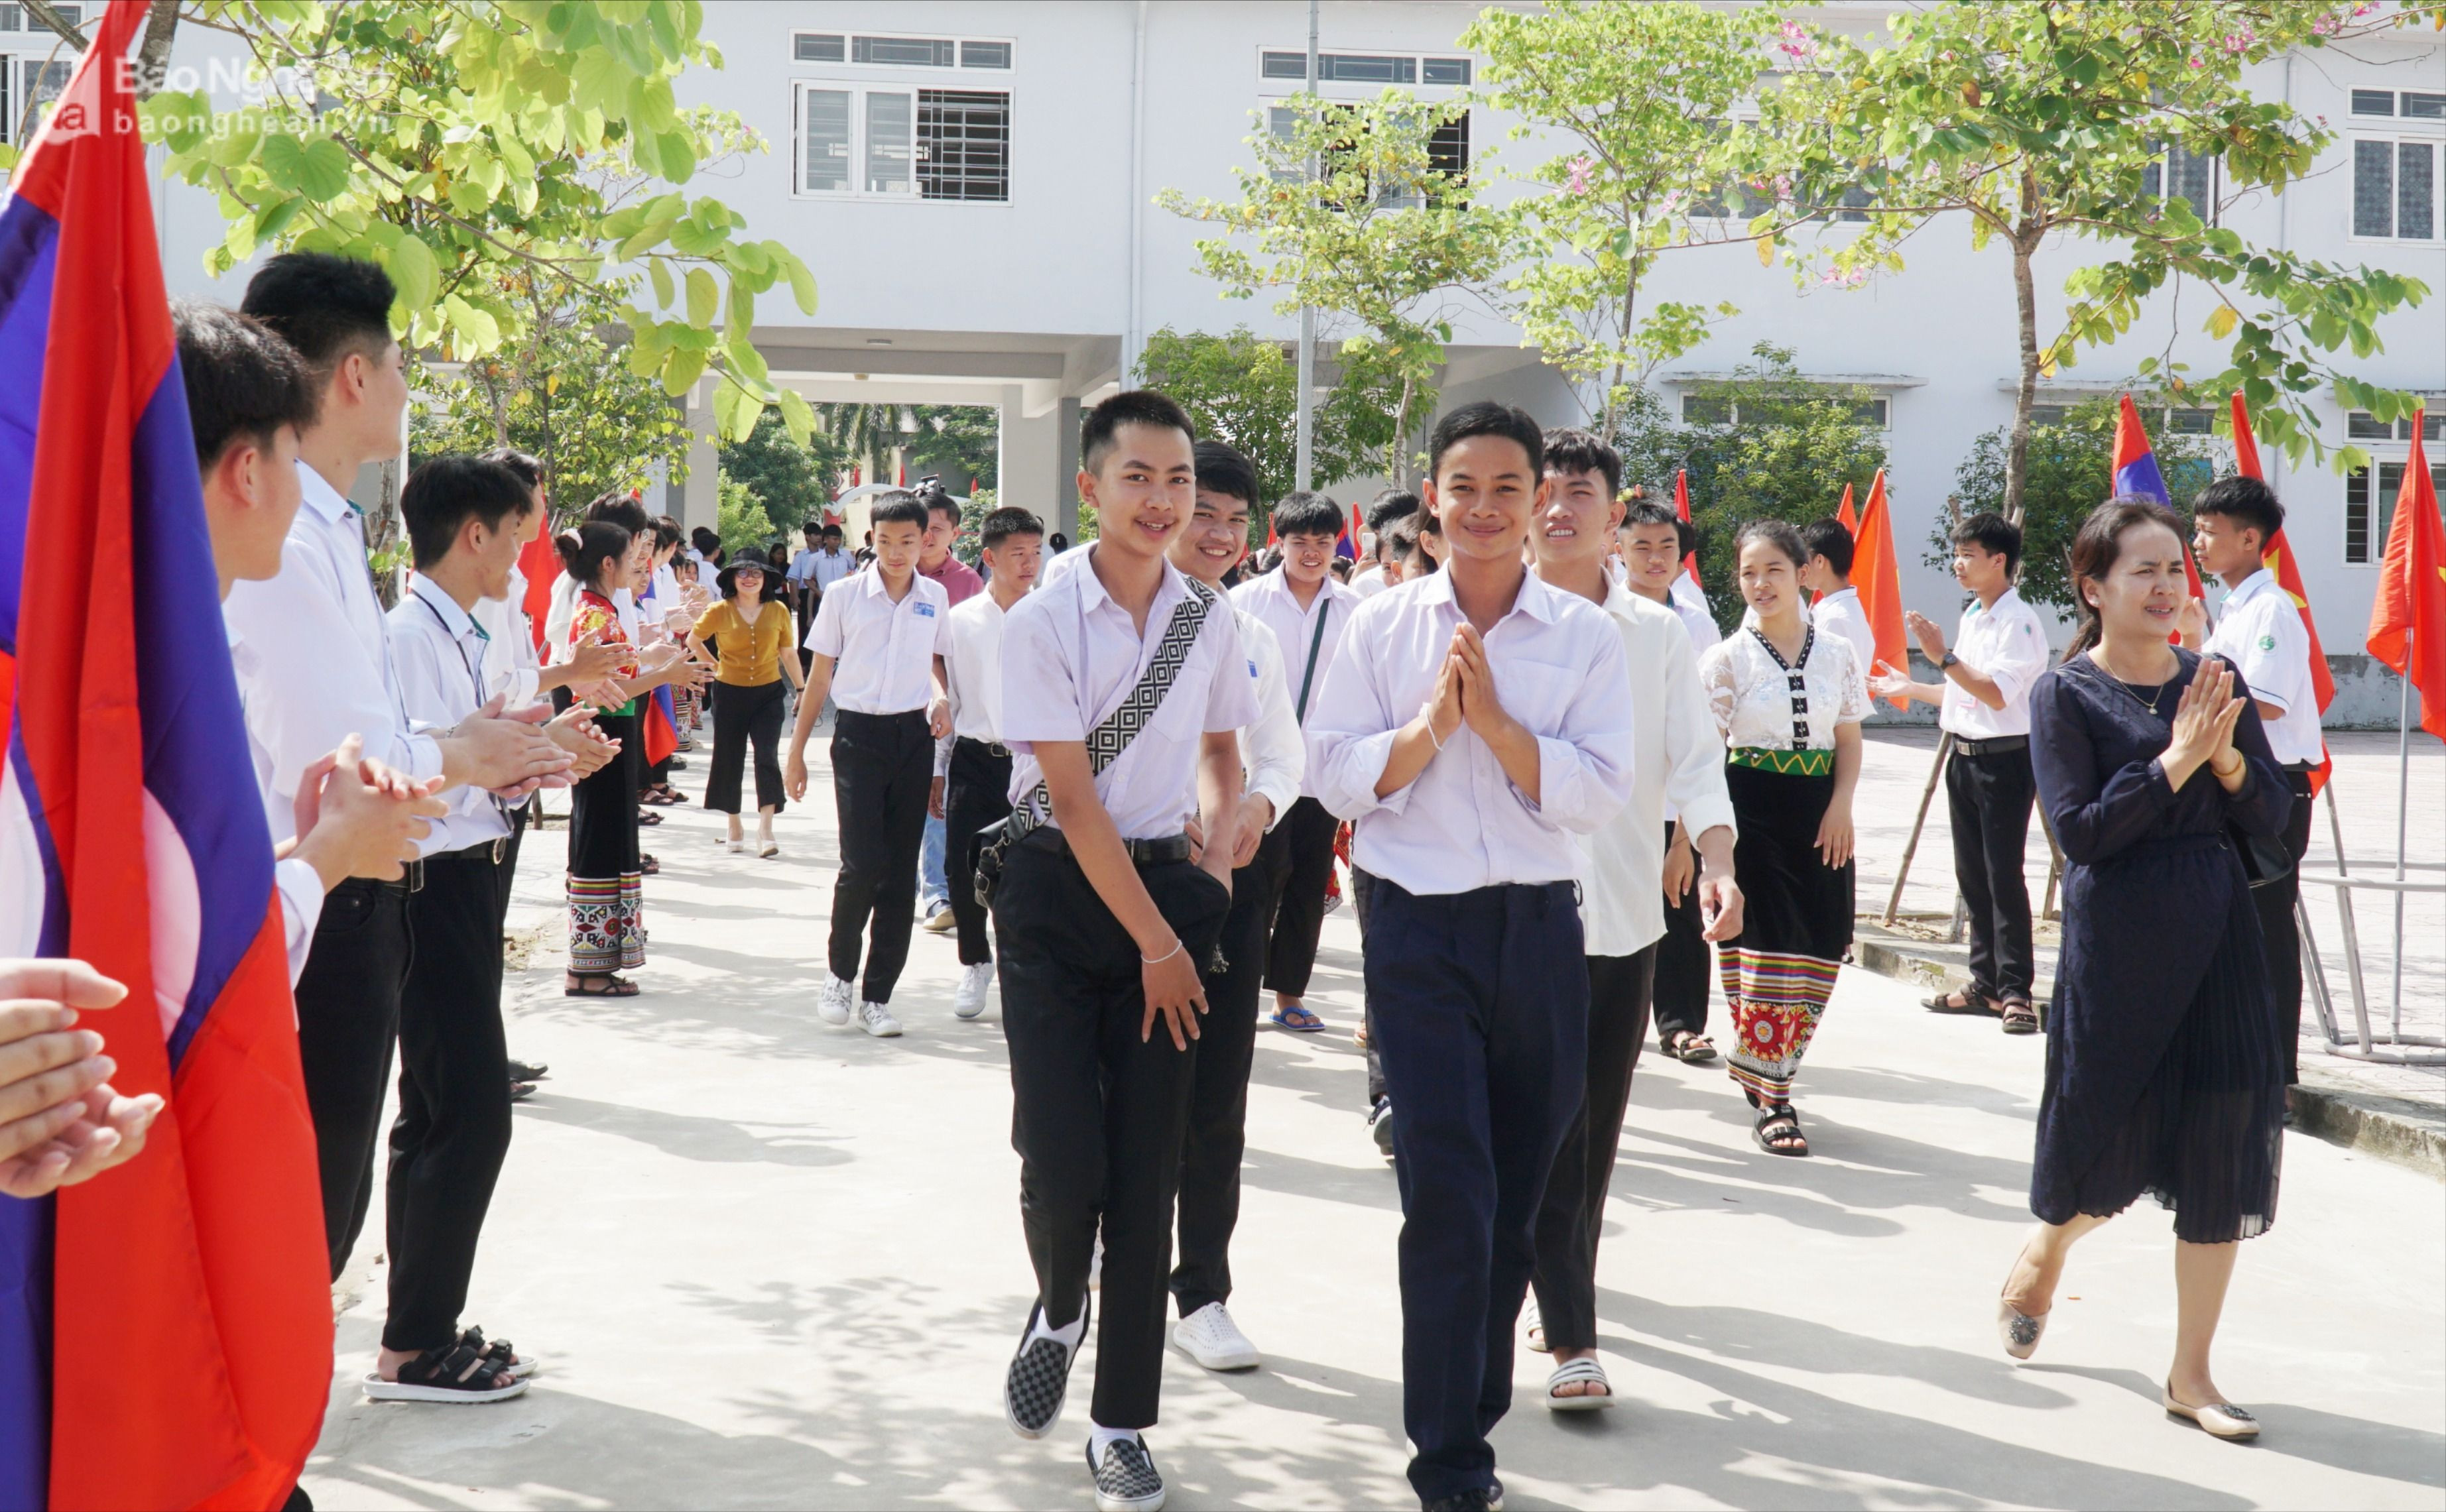 Các học sinh Trường PT DTNT THPT số 2 chào đón các lưu học sinh Lào (1).jpg